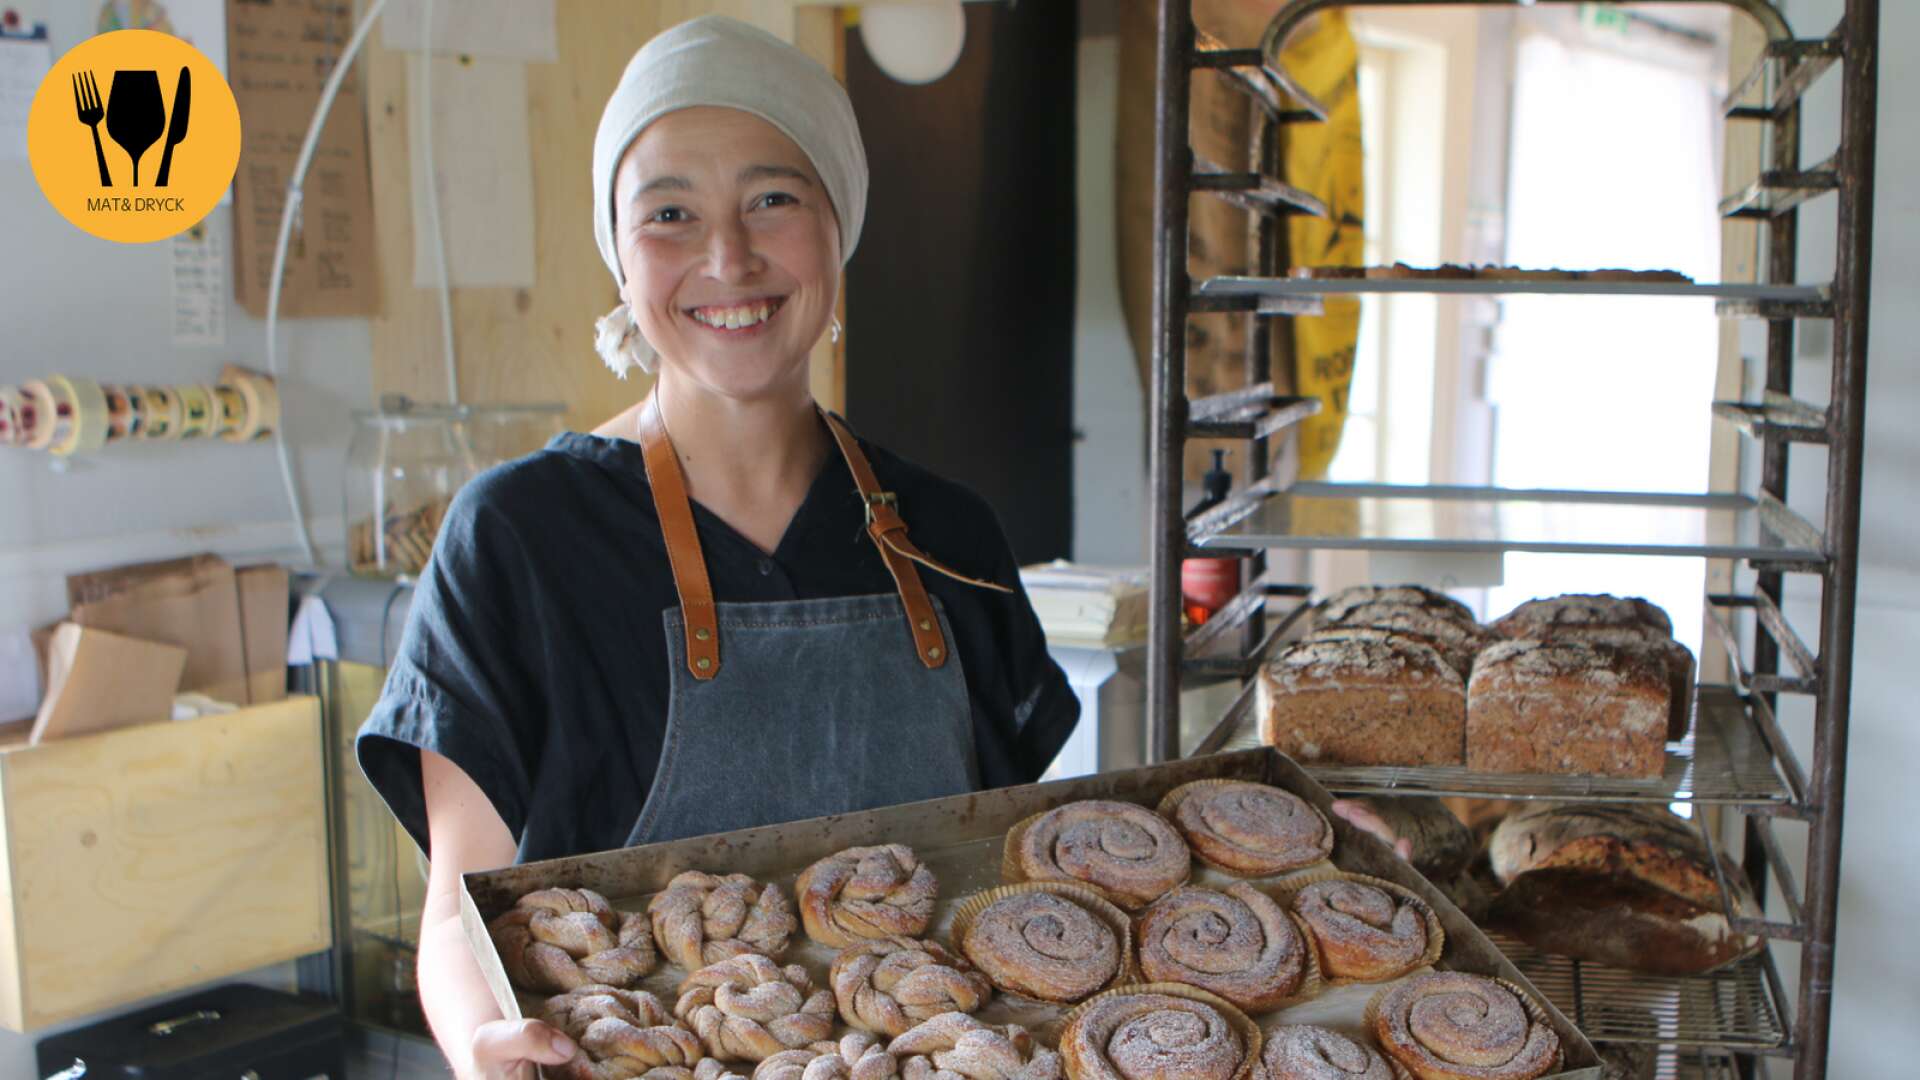 Paret Westling driver Hjulsjö103 Café och bageri utanför Hällefors